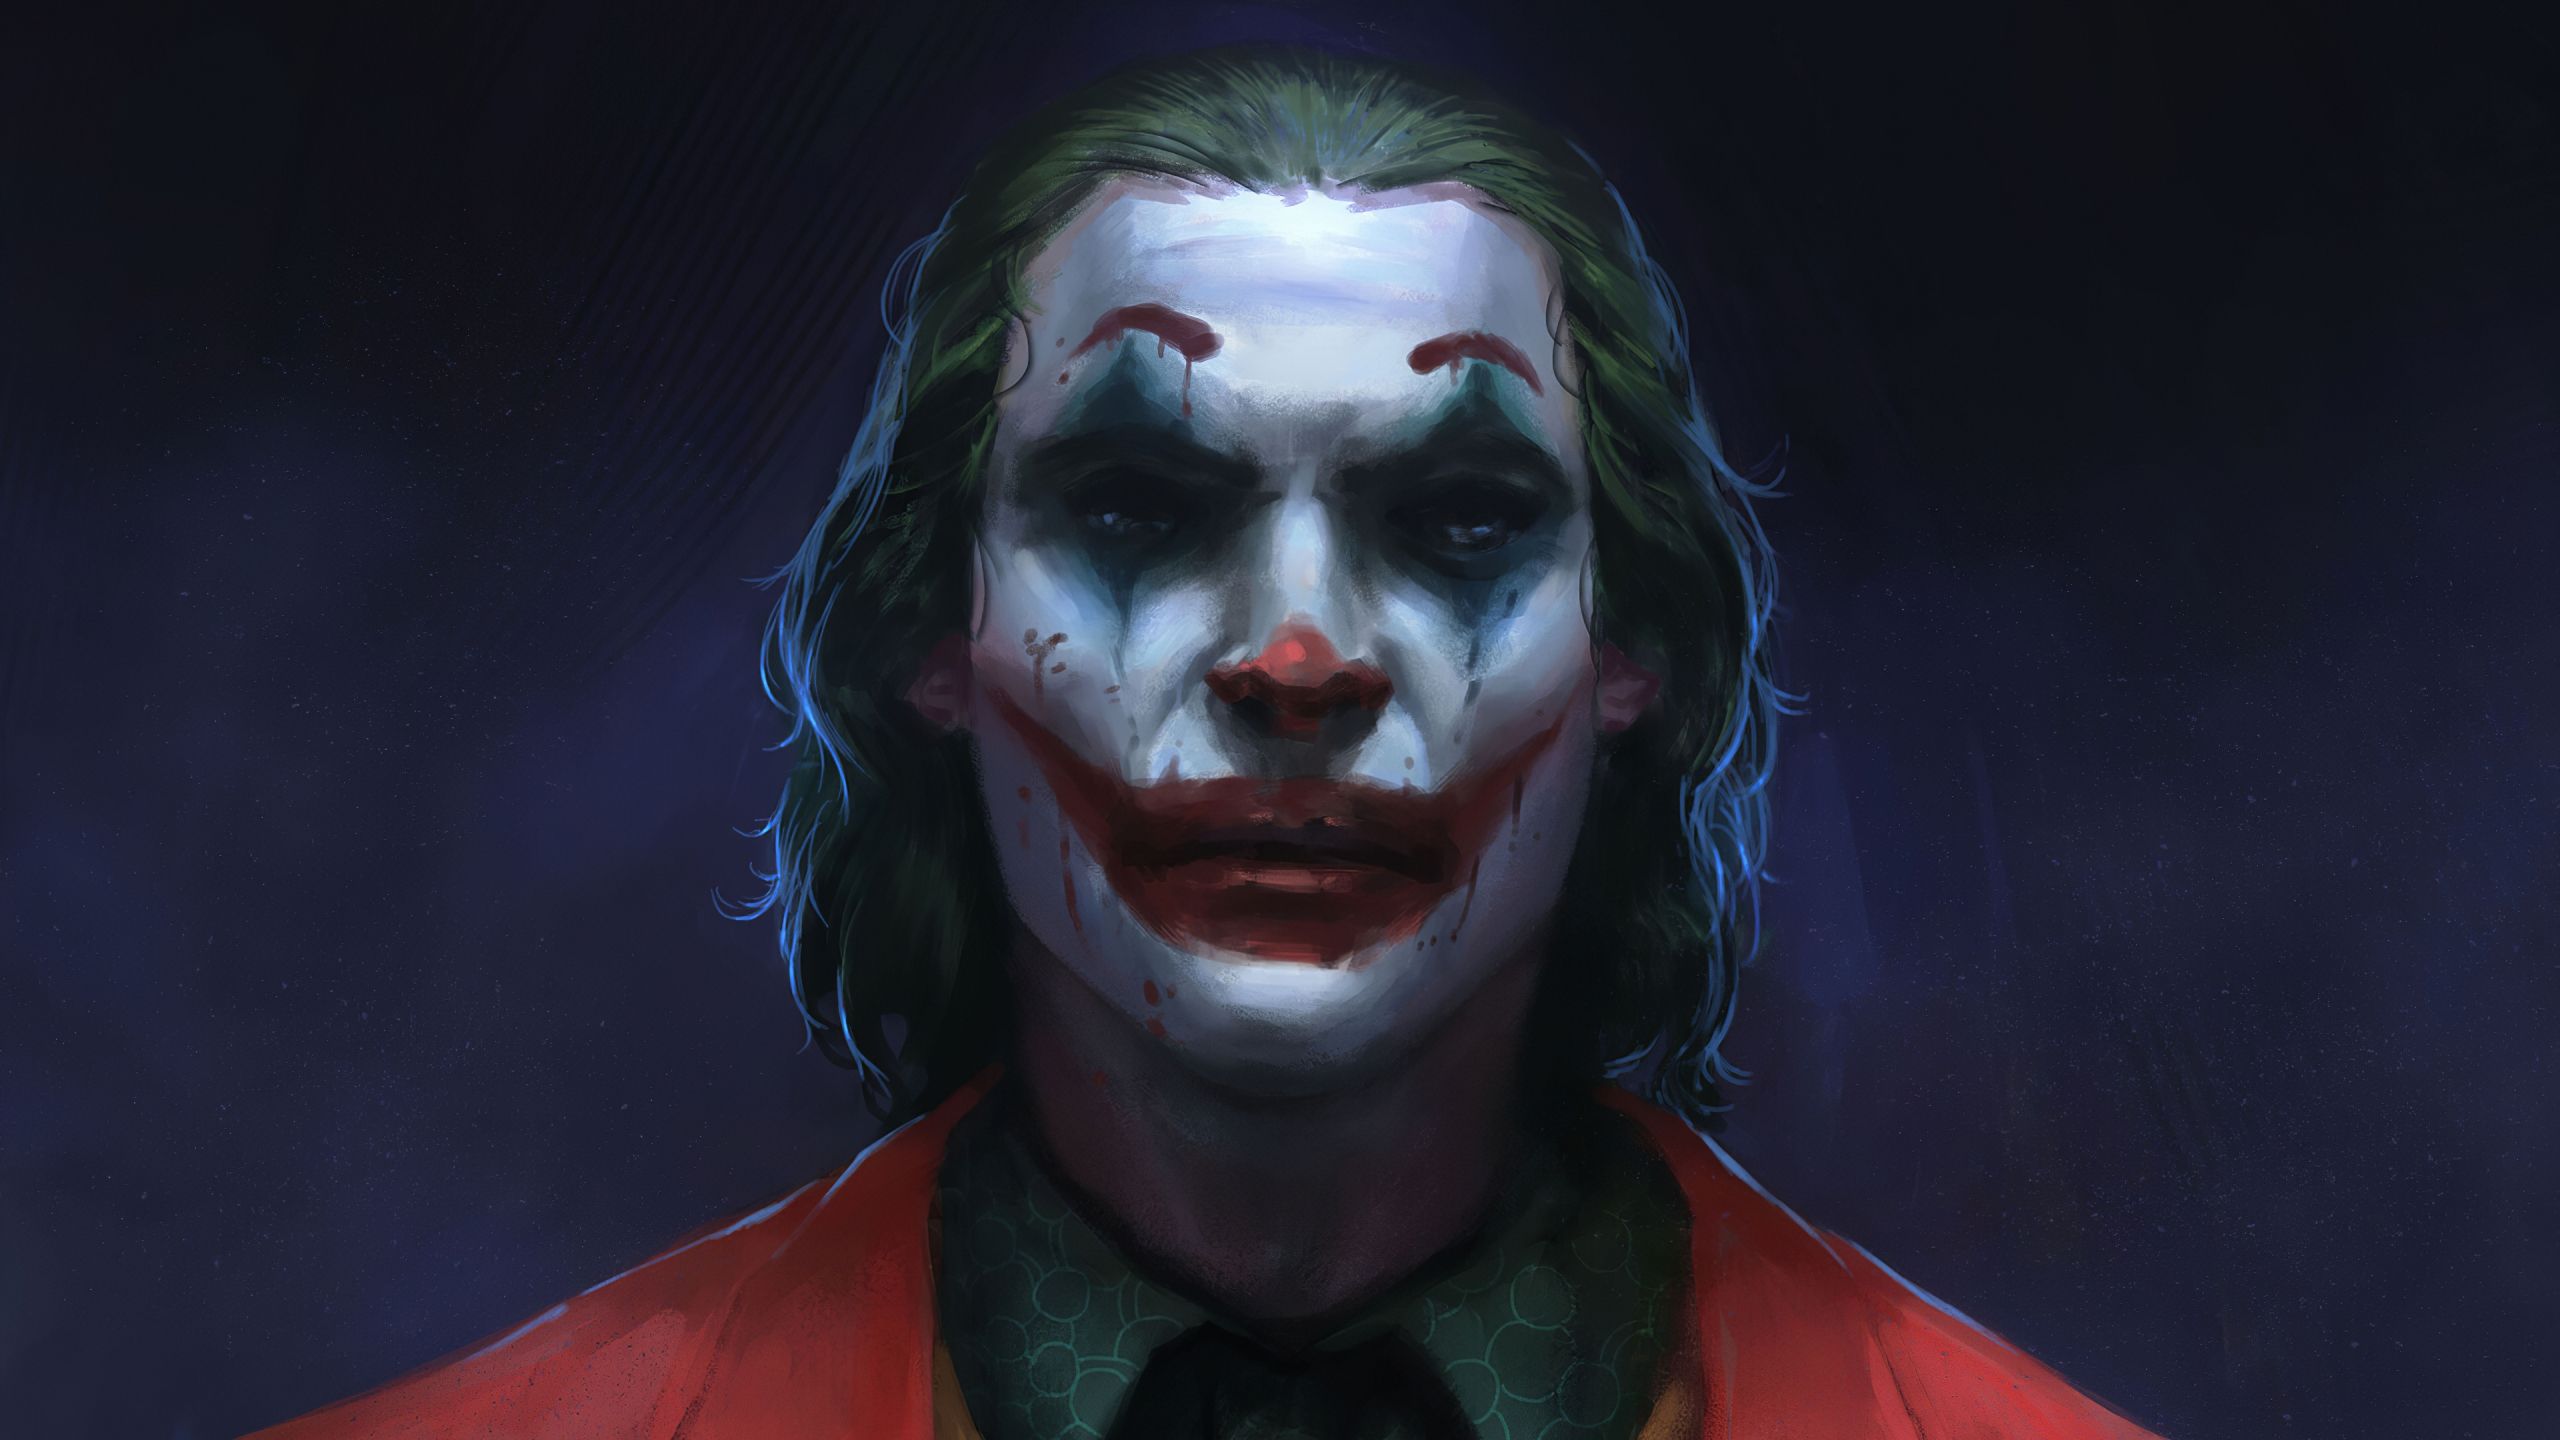 Joker Sketch Wallpaper 4k Ultra HD